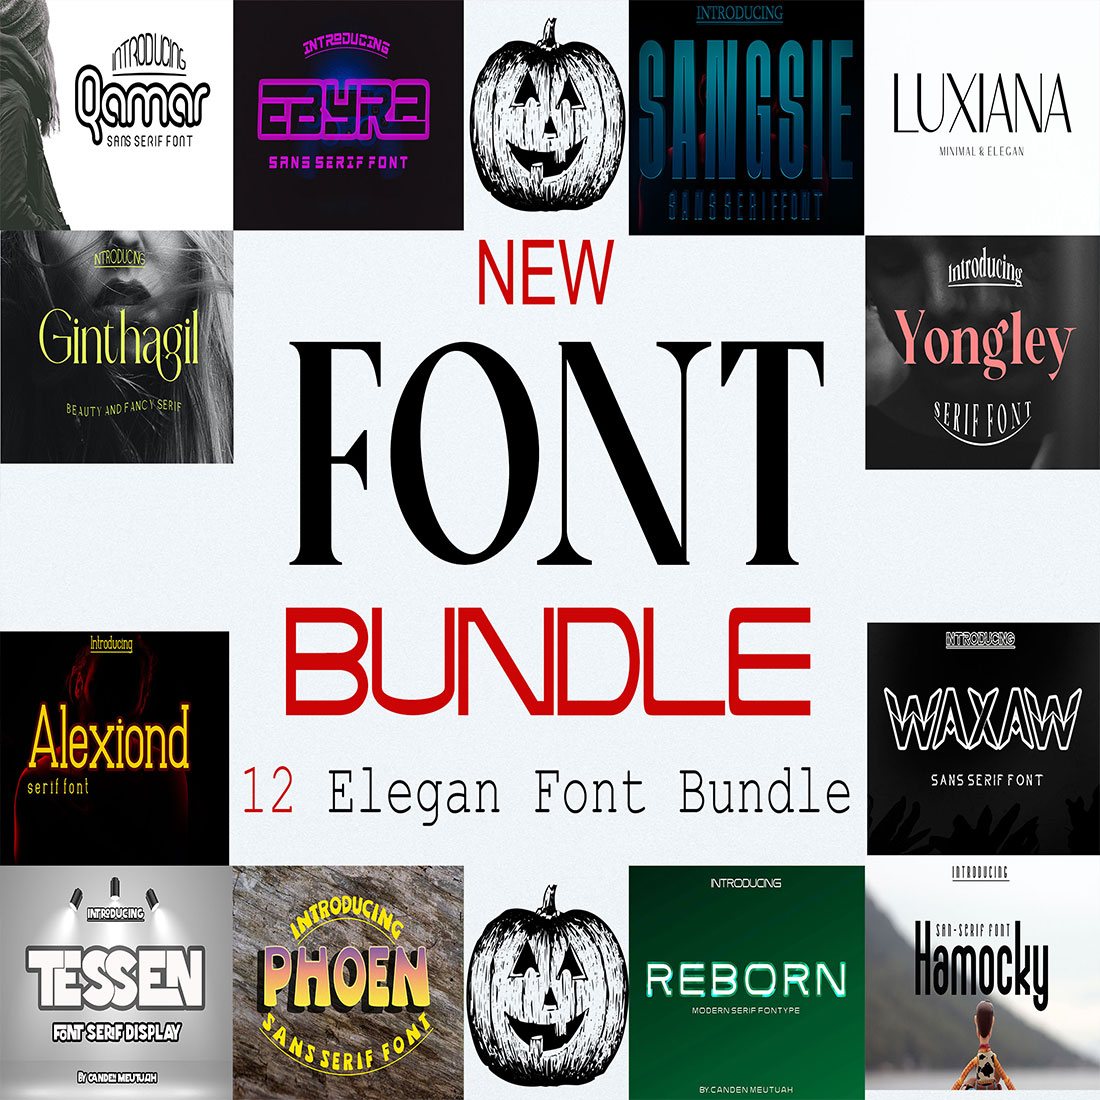 Font Bundle Elegant cover image.